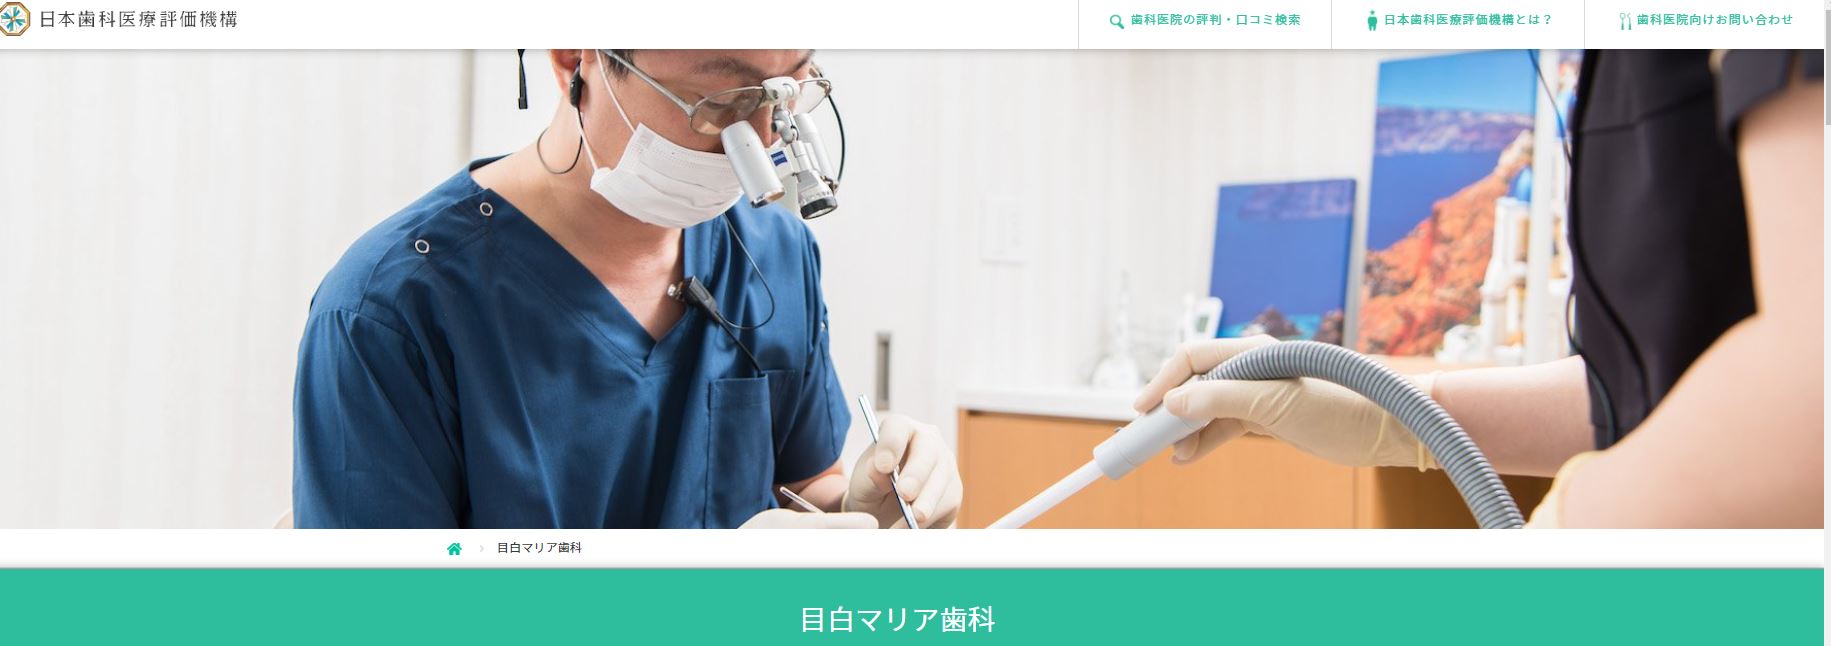 目白マリア歯科日本歯科医療評価機構のページ